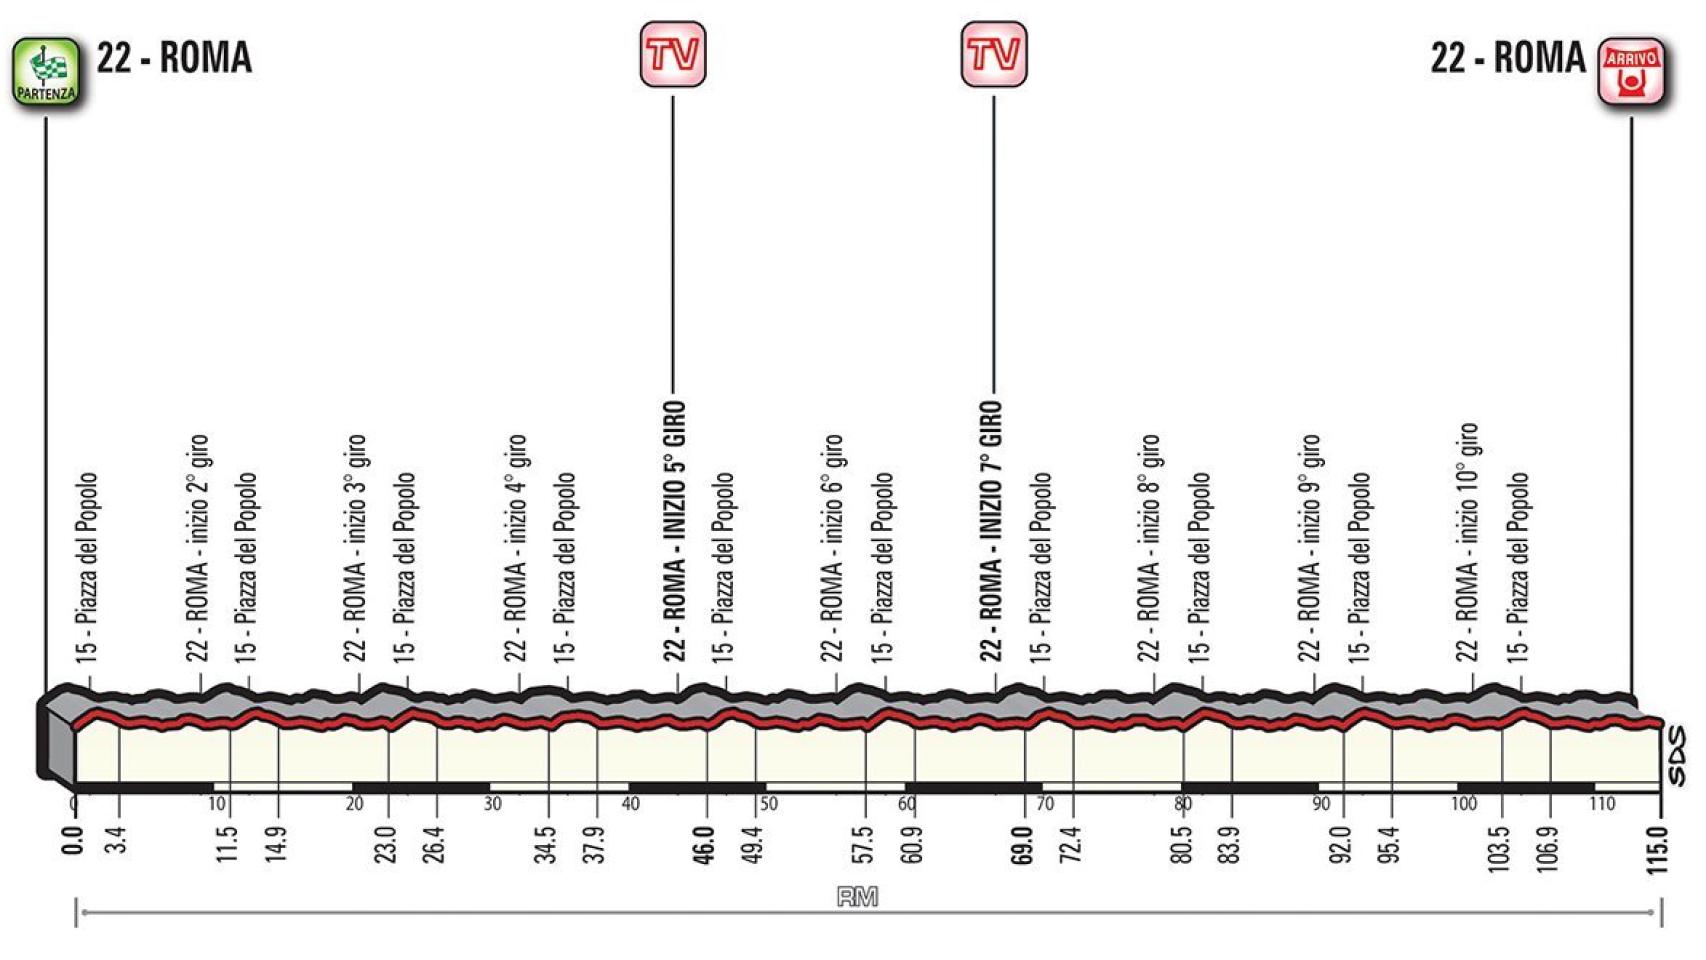 Perfil de la 21ª etapa del Giro de Italia.